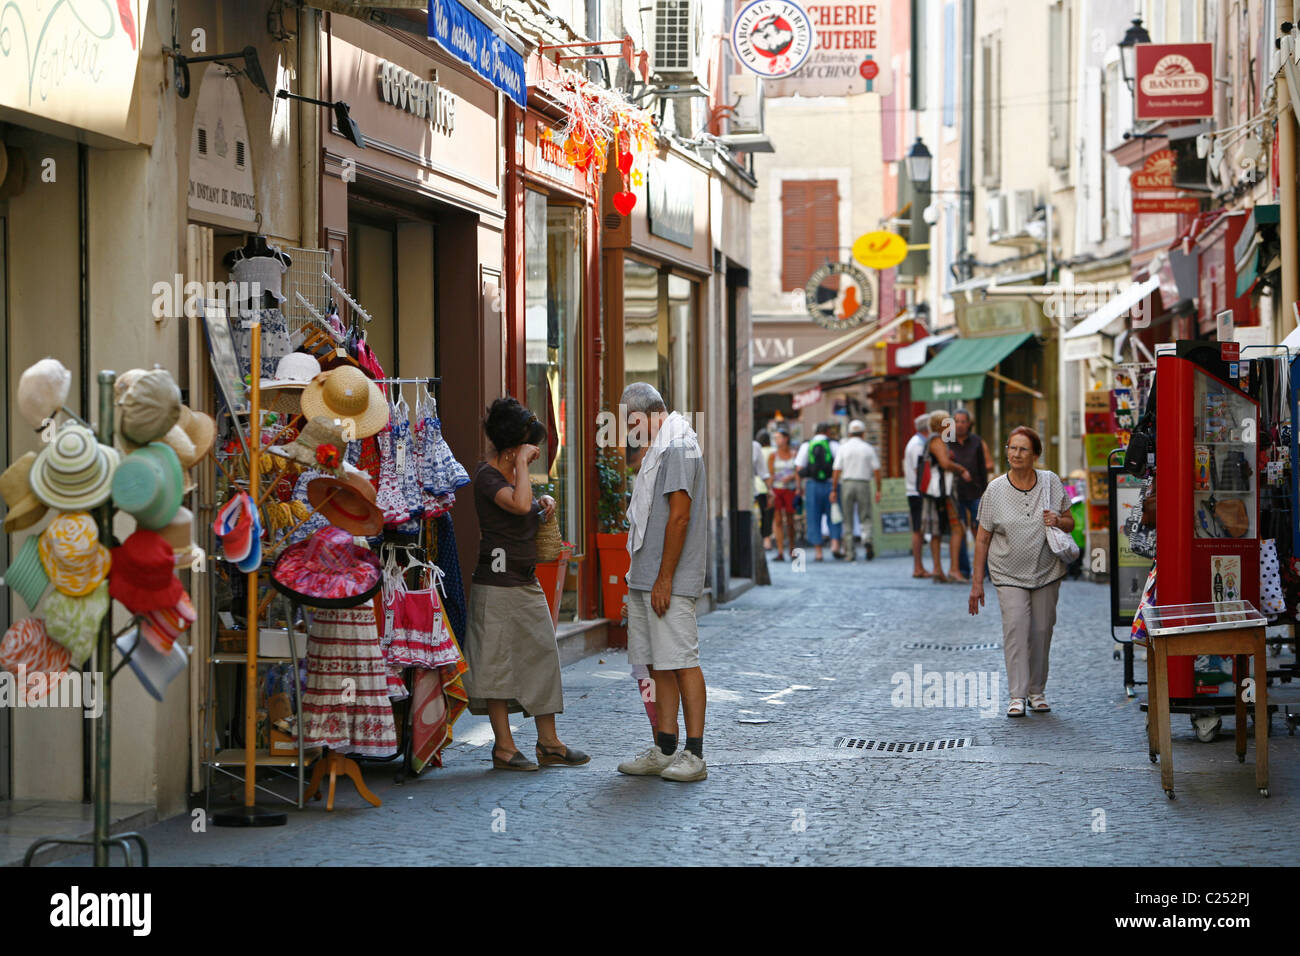 Scena di strada, LIsle sur la Sorgue, Vaucluse Provence, Francia. Foto Stock